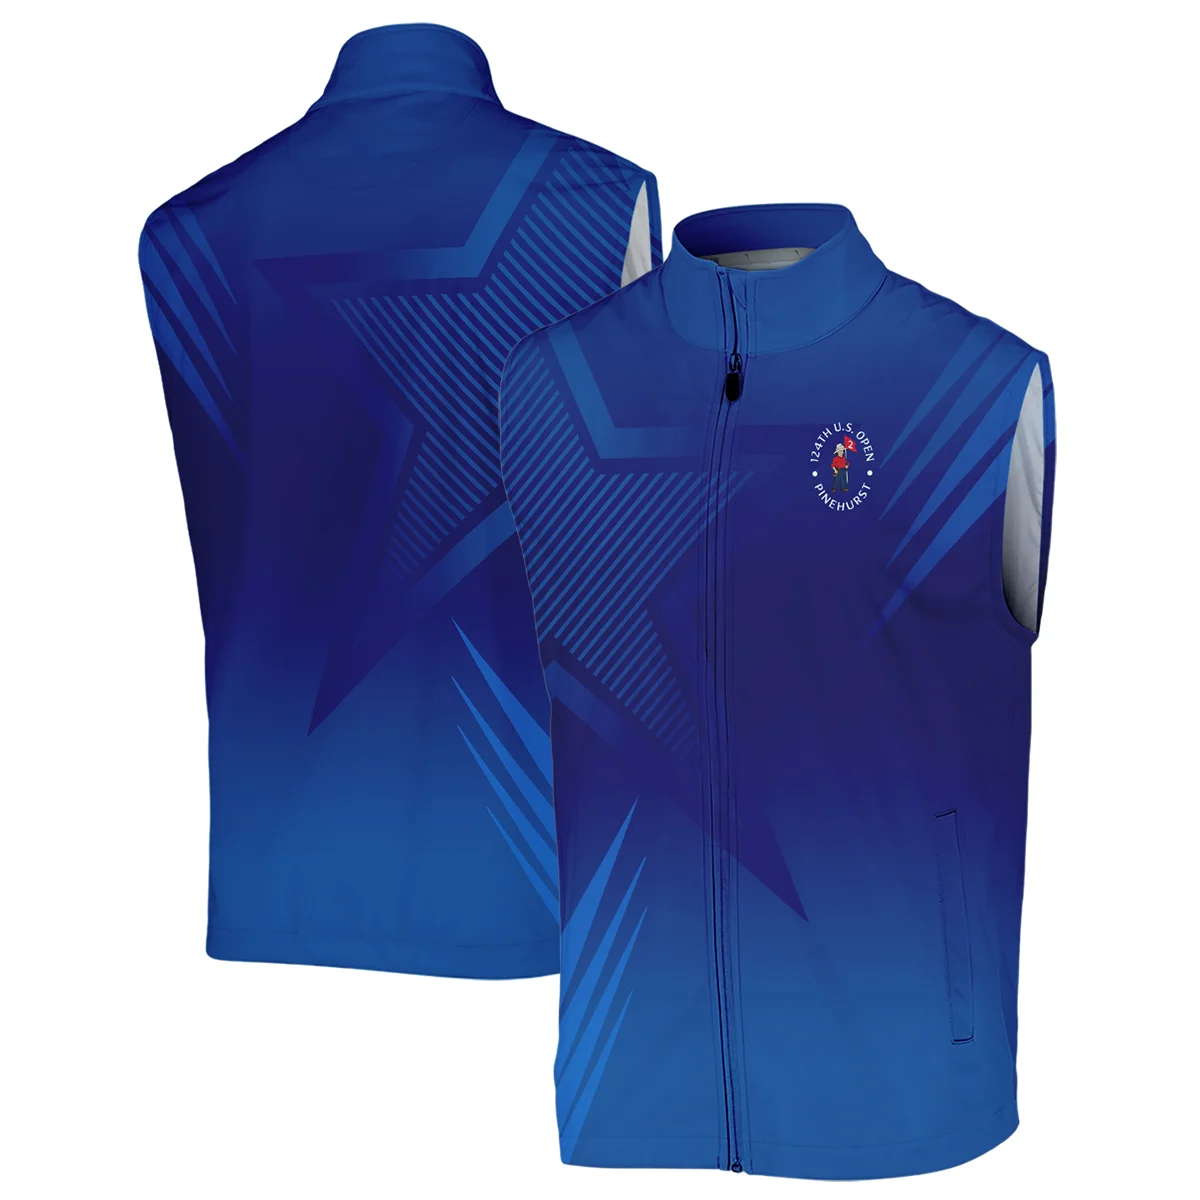 124th U.S. Open Pinehurst No.2 Titleist Unisex Sweatshirt Dark Blue Gradient Star Pattern Sweatshirt